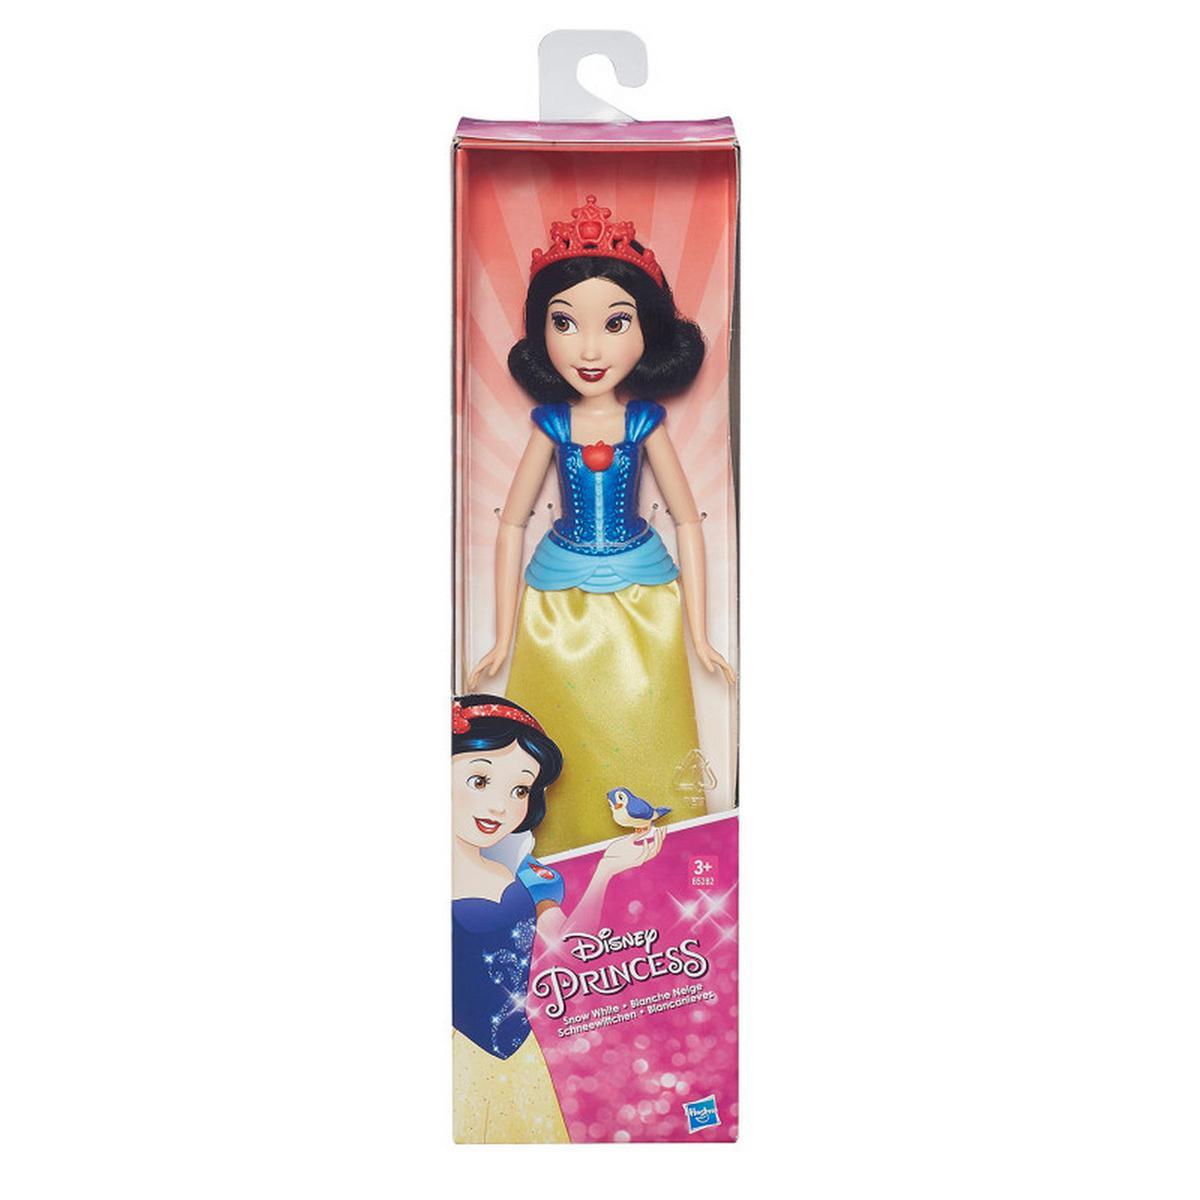 Princesas Disney - Branca de Neve | BONECAS PRINCESAS DISNEY & ACESSÓRIOS |  Loja de brinquedos e videojogos Online Toysrus